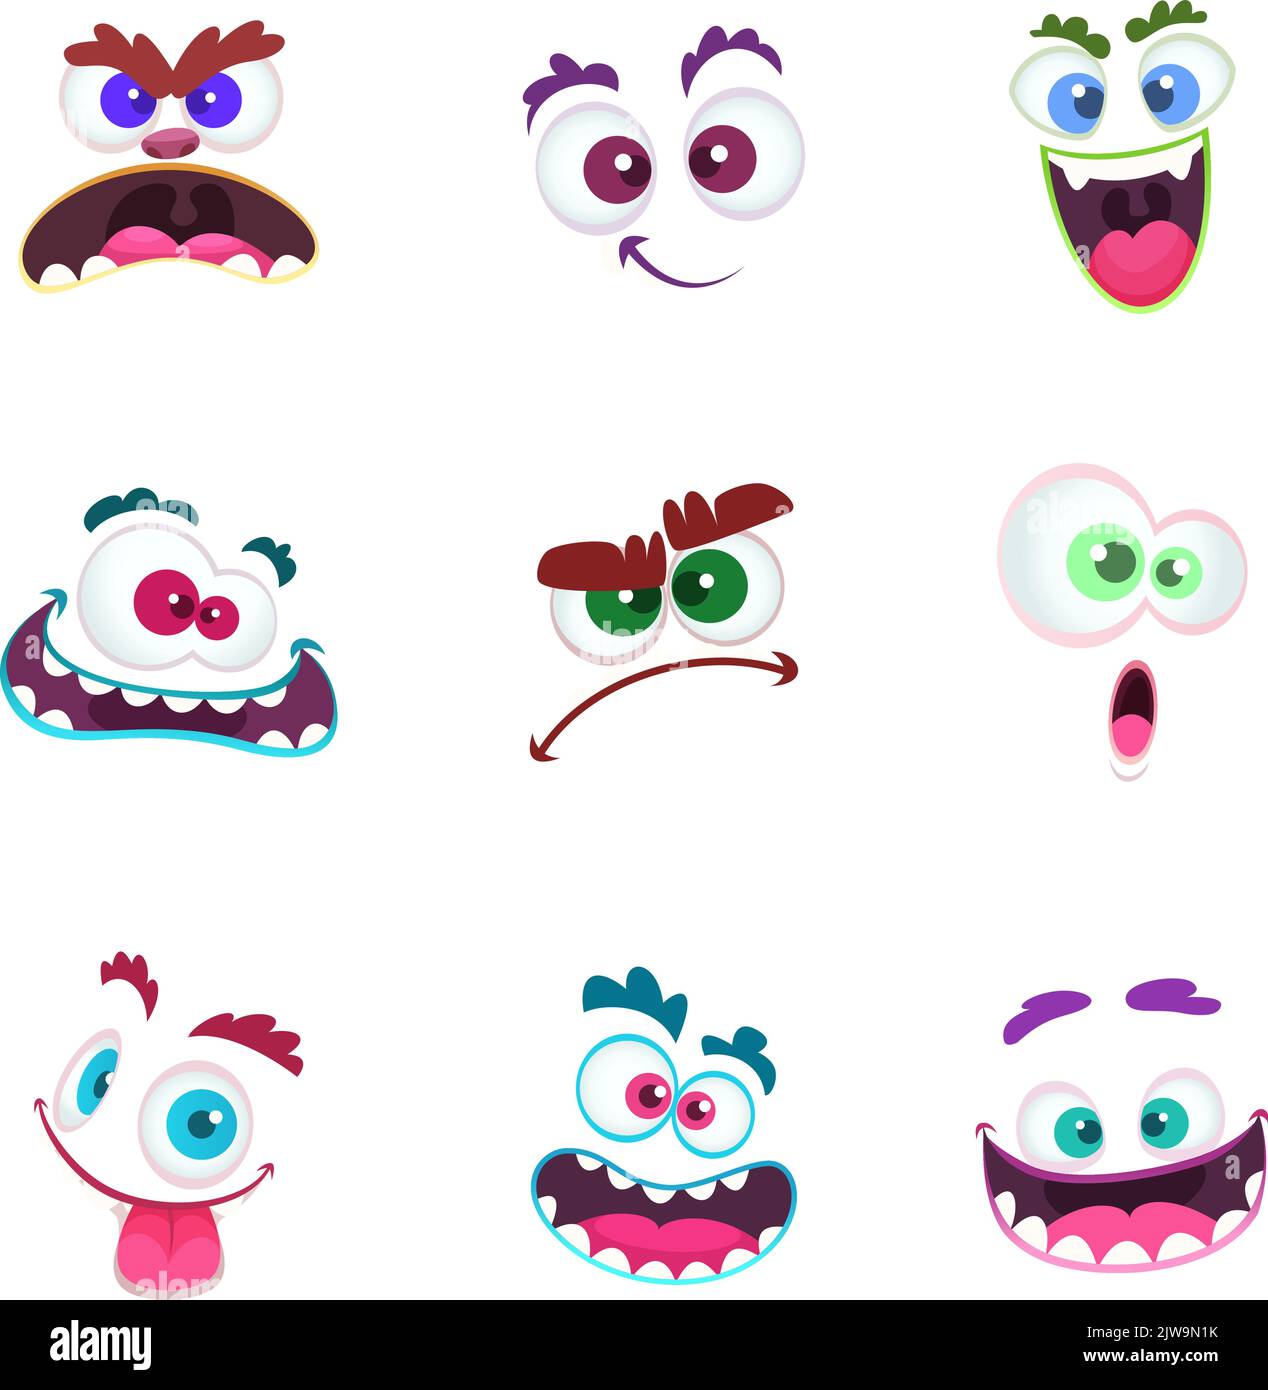 Monster Gesichter. Verrückte Avatar lustige Charakter Emoticons mit Augen und toothy Münder Cartoon Monster Face Sammlung Stock Vektor